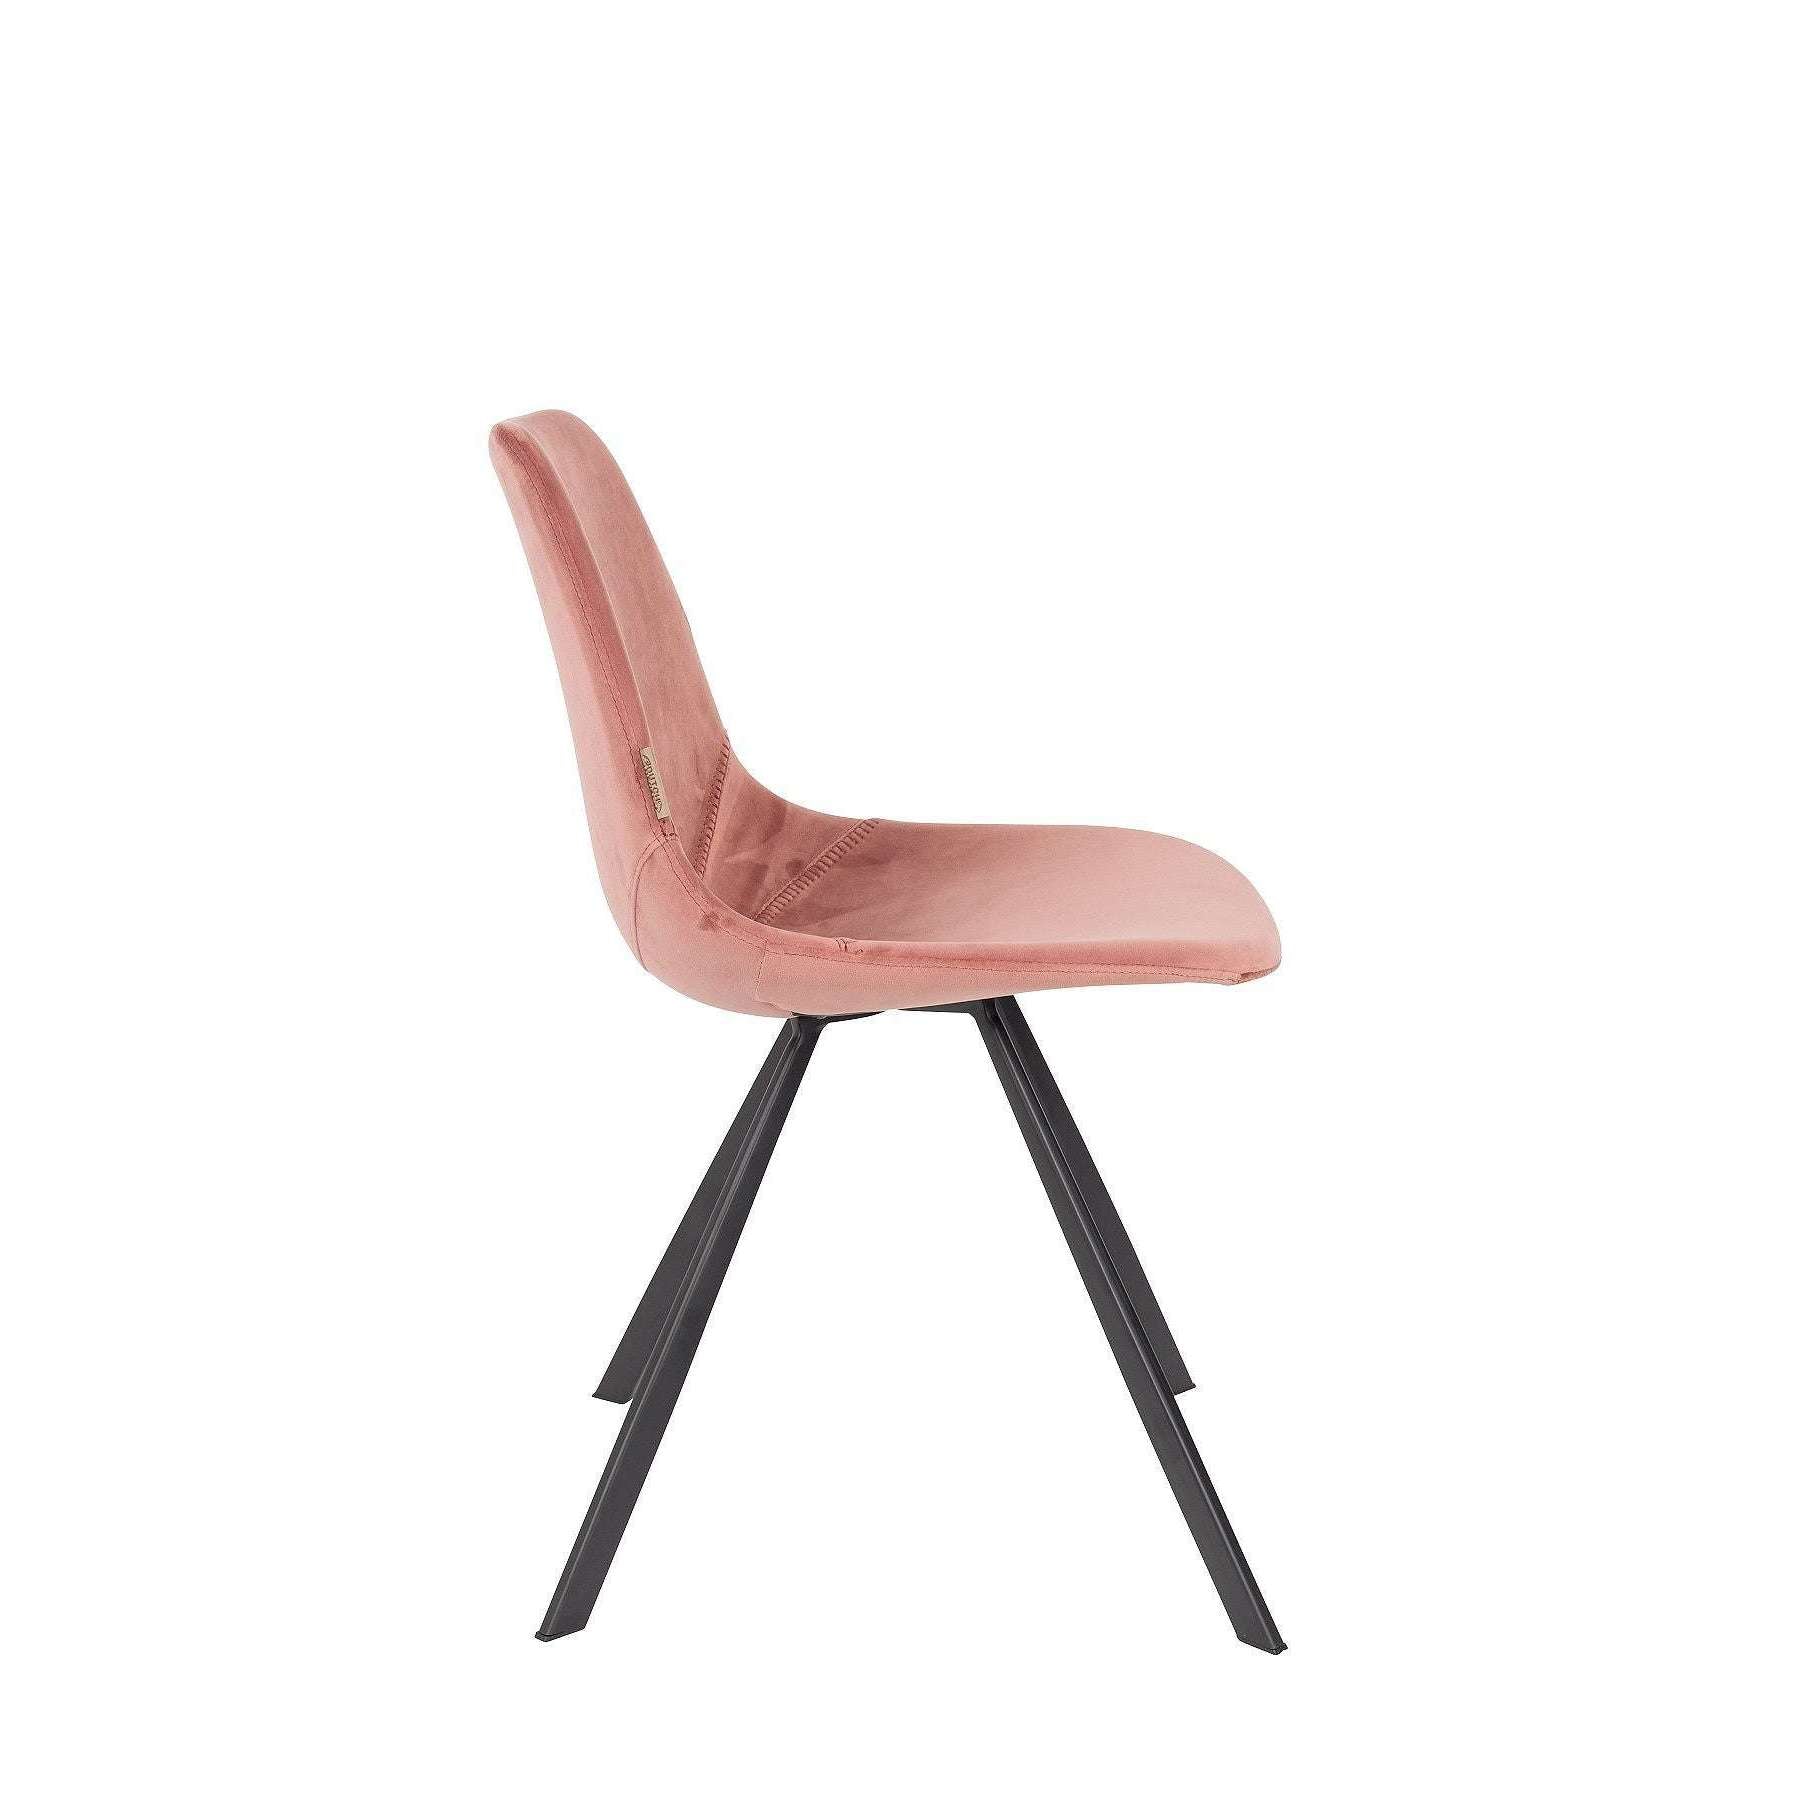 speling Besmetten Dekbed Dutchbone stoel franky velvet oud roze 56 x 46 x 83 cm – Selinni